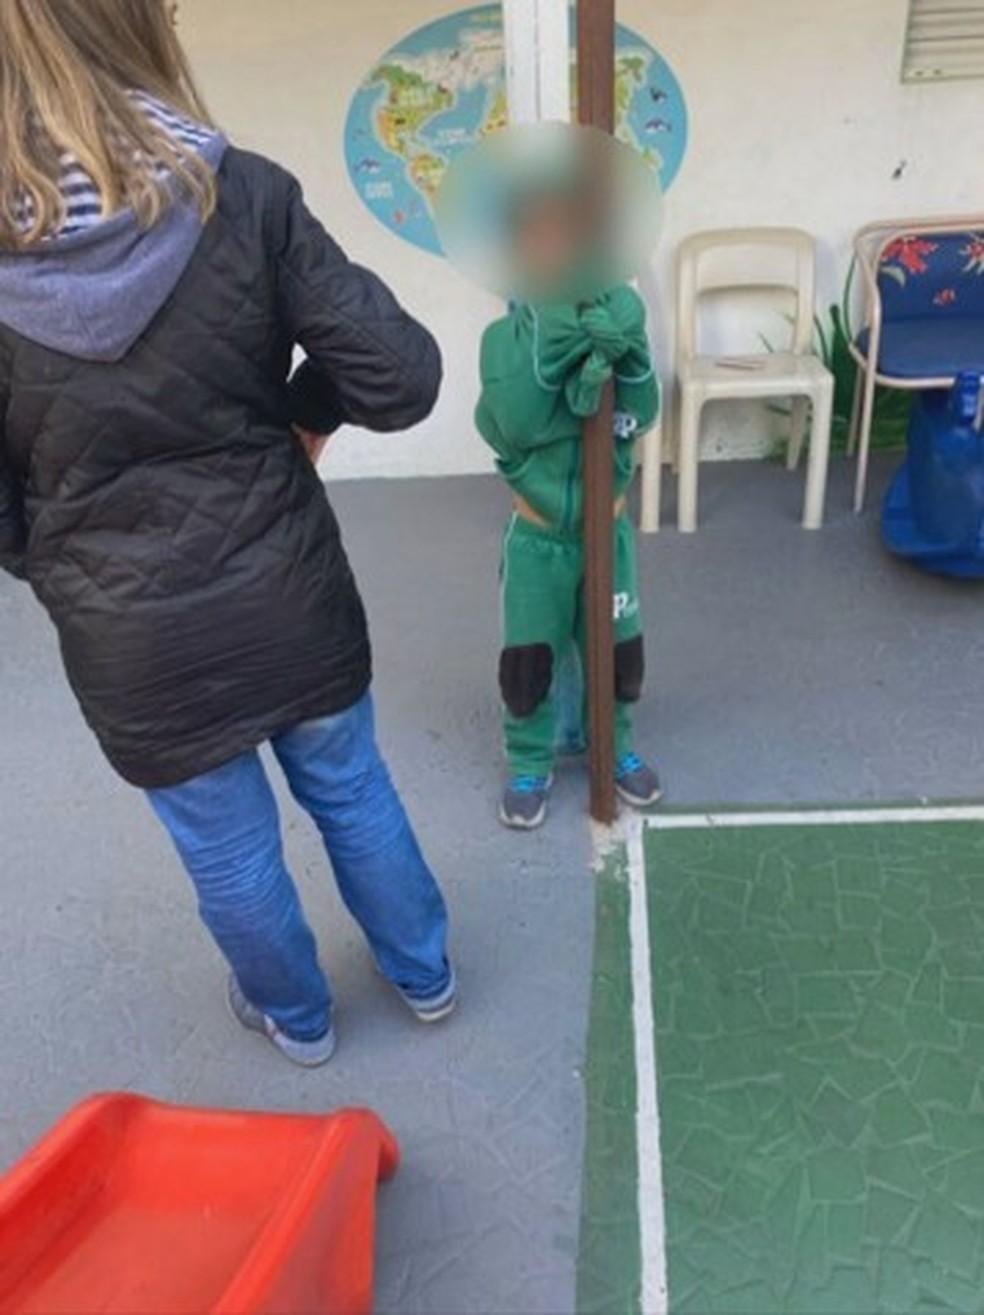 Criança é amarrada a poste por fazer xixi na roupa em escola de SP; polícia investiga denúncias de maus-tratos